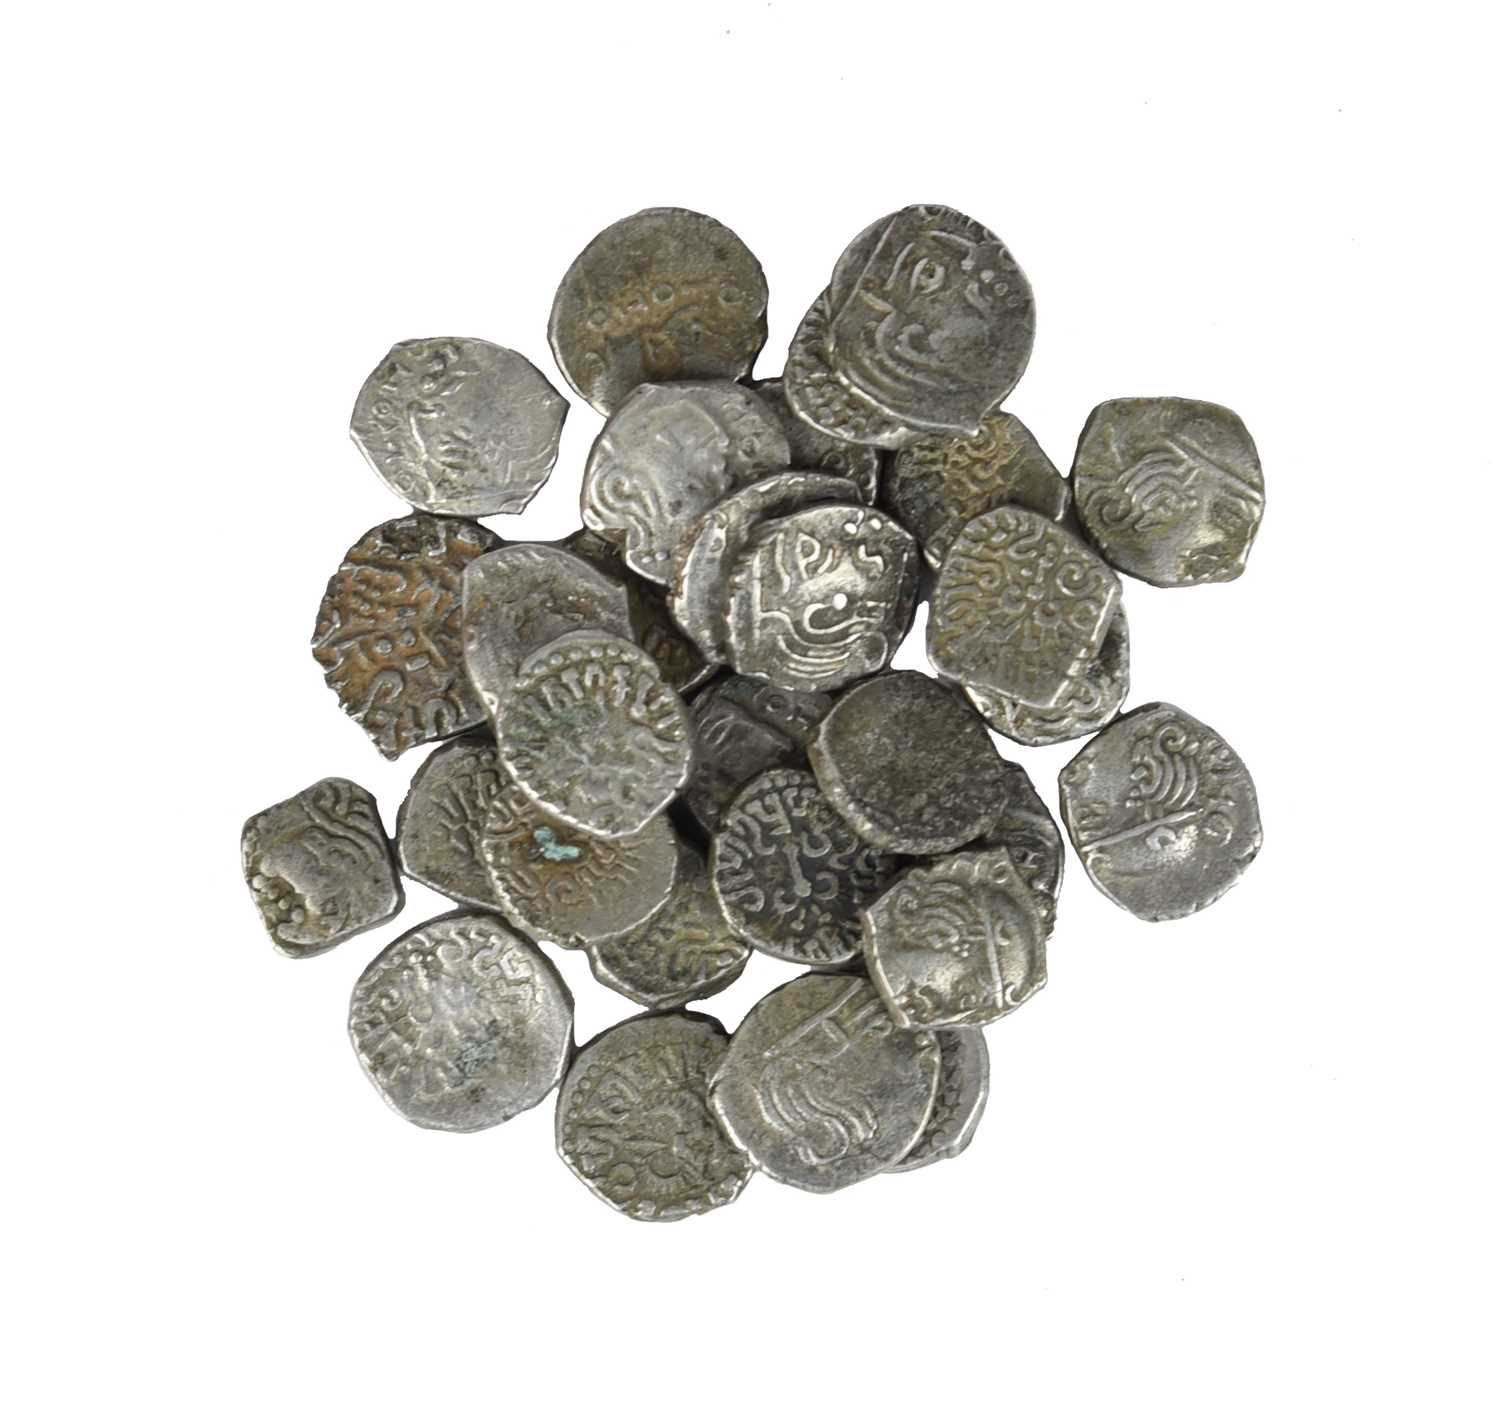 India - Gupta Empire: a small quantity of silver drachma, Chandragupta II (375-415 AD), and possibly